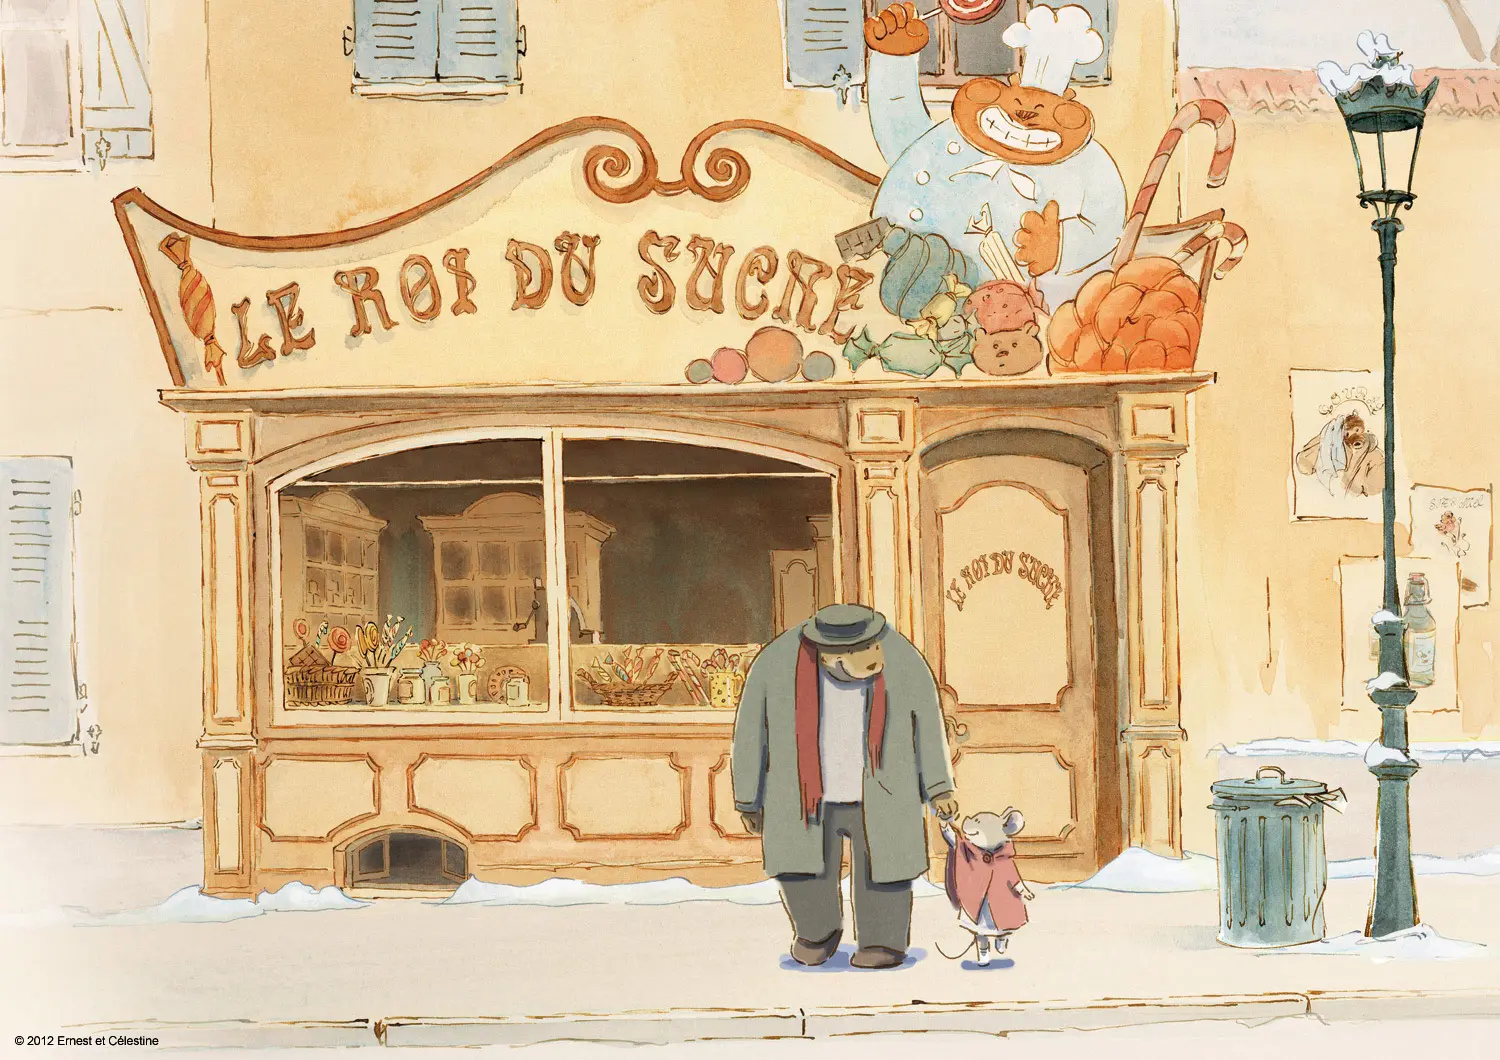 Recenze: O myšce a medvědovi - originální pohádka z francouzské produkce